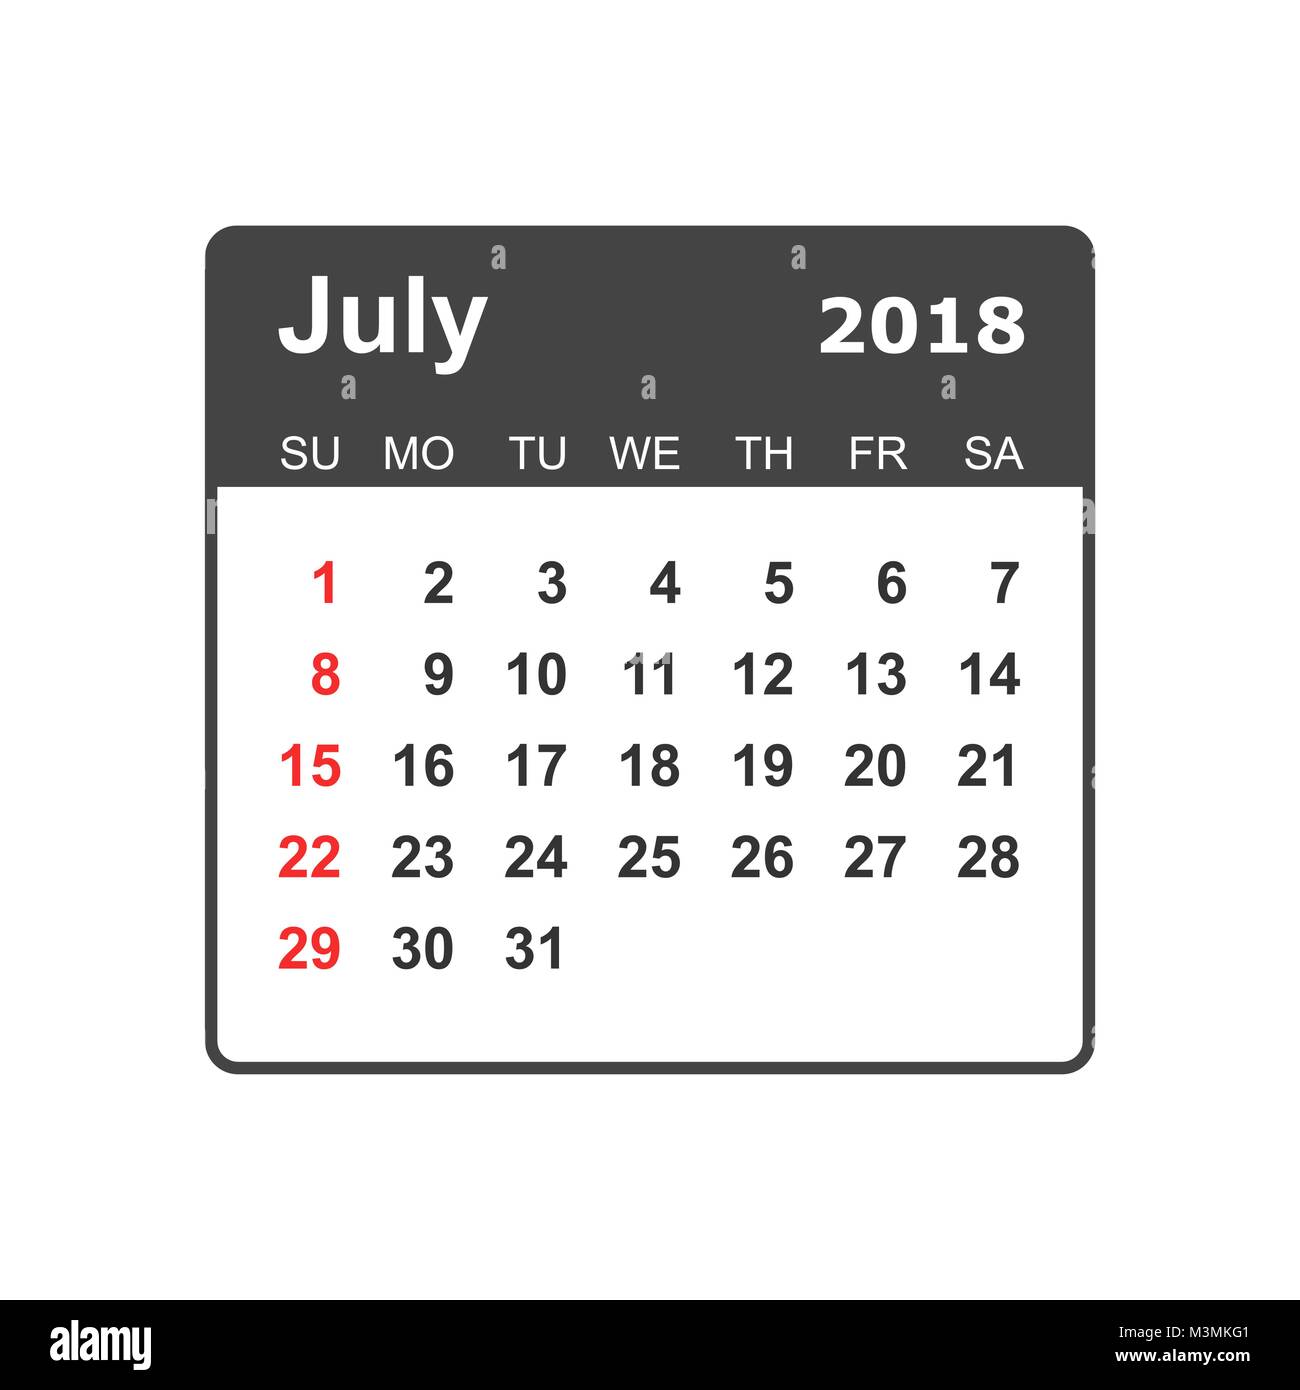 july-2018-calendar-calendar-planner-design-template-week-starts-on